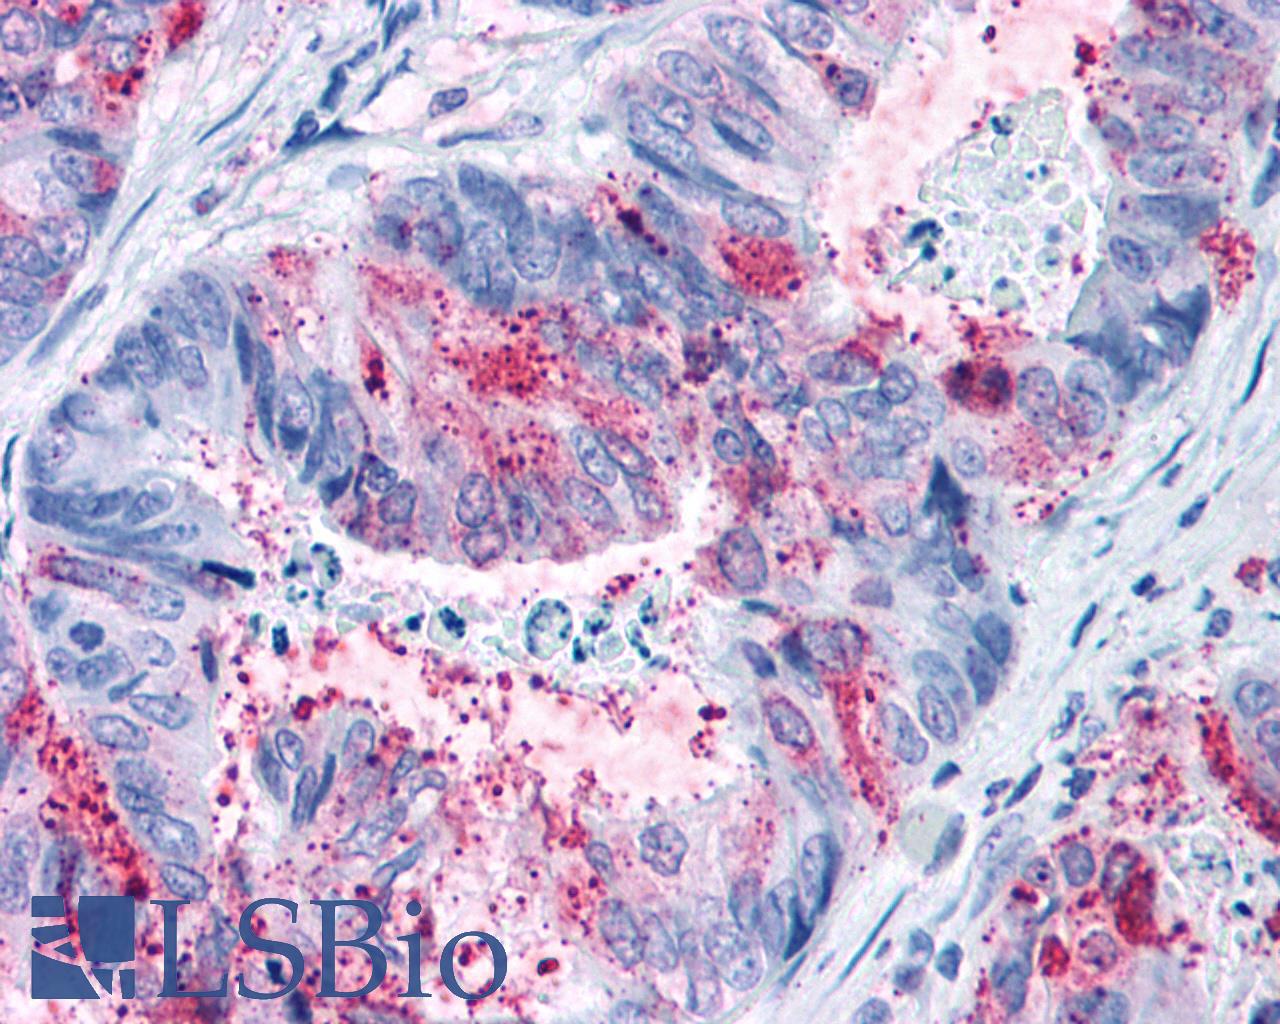 GPR82 Antibody - Colon carcinoma